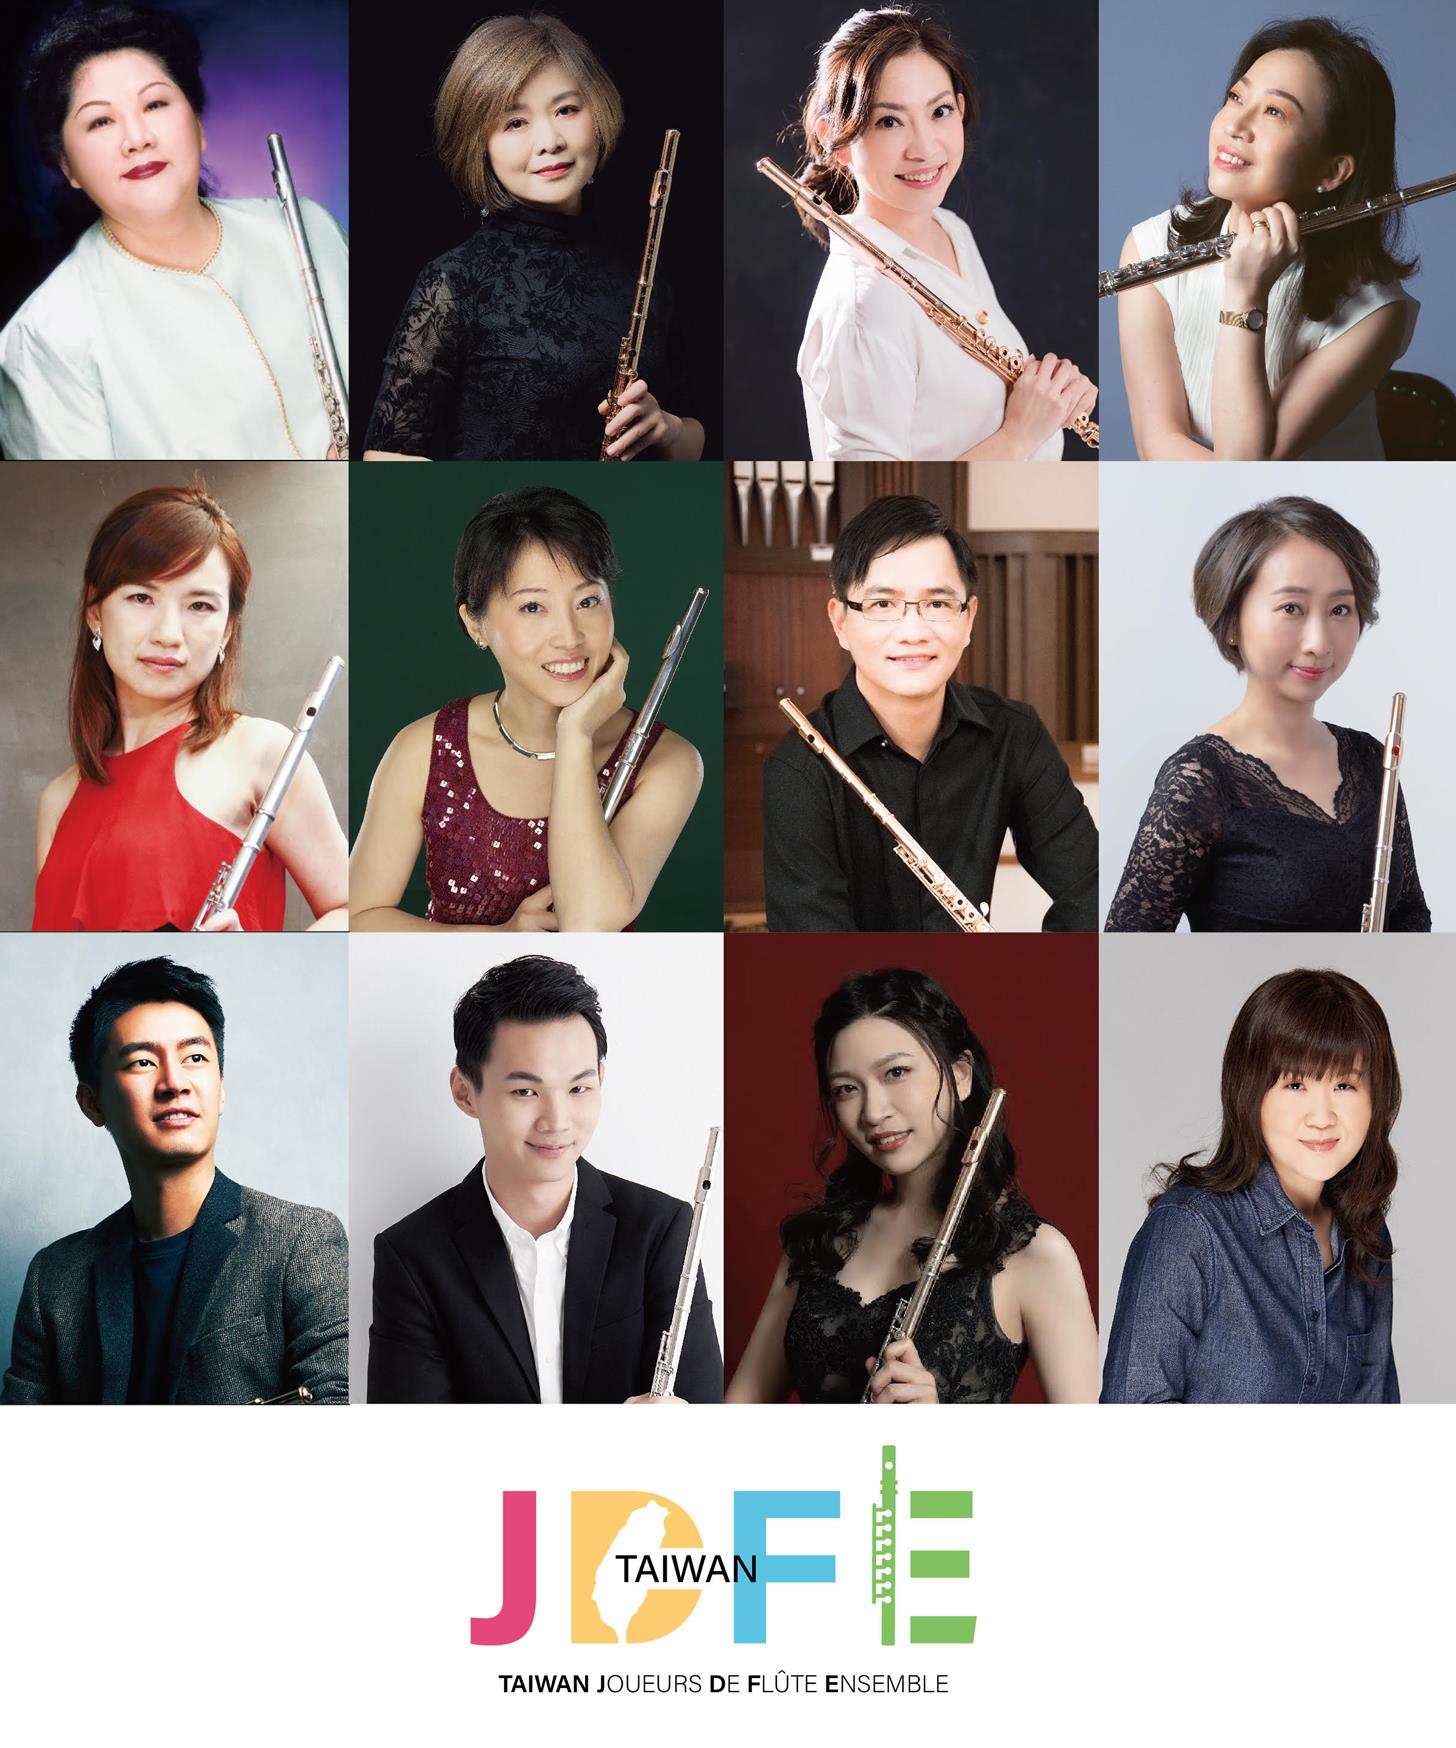 Taiwan Joueurs de Flute Ensemble